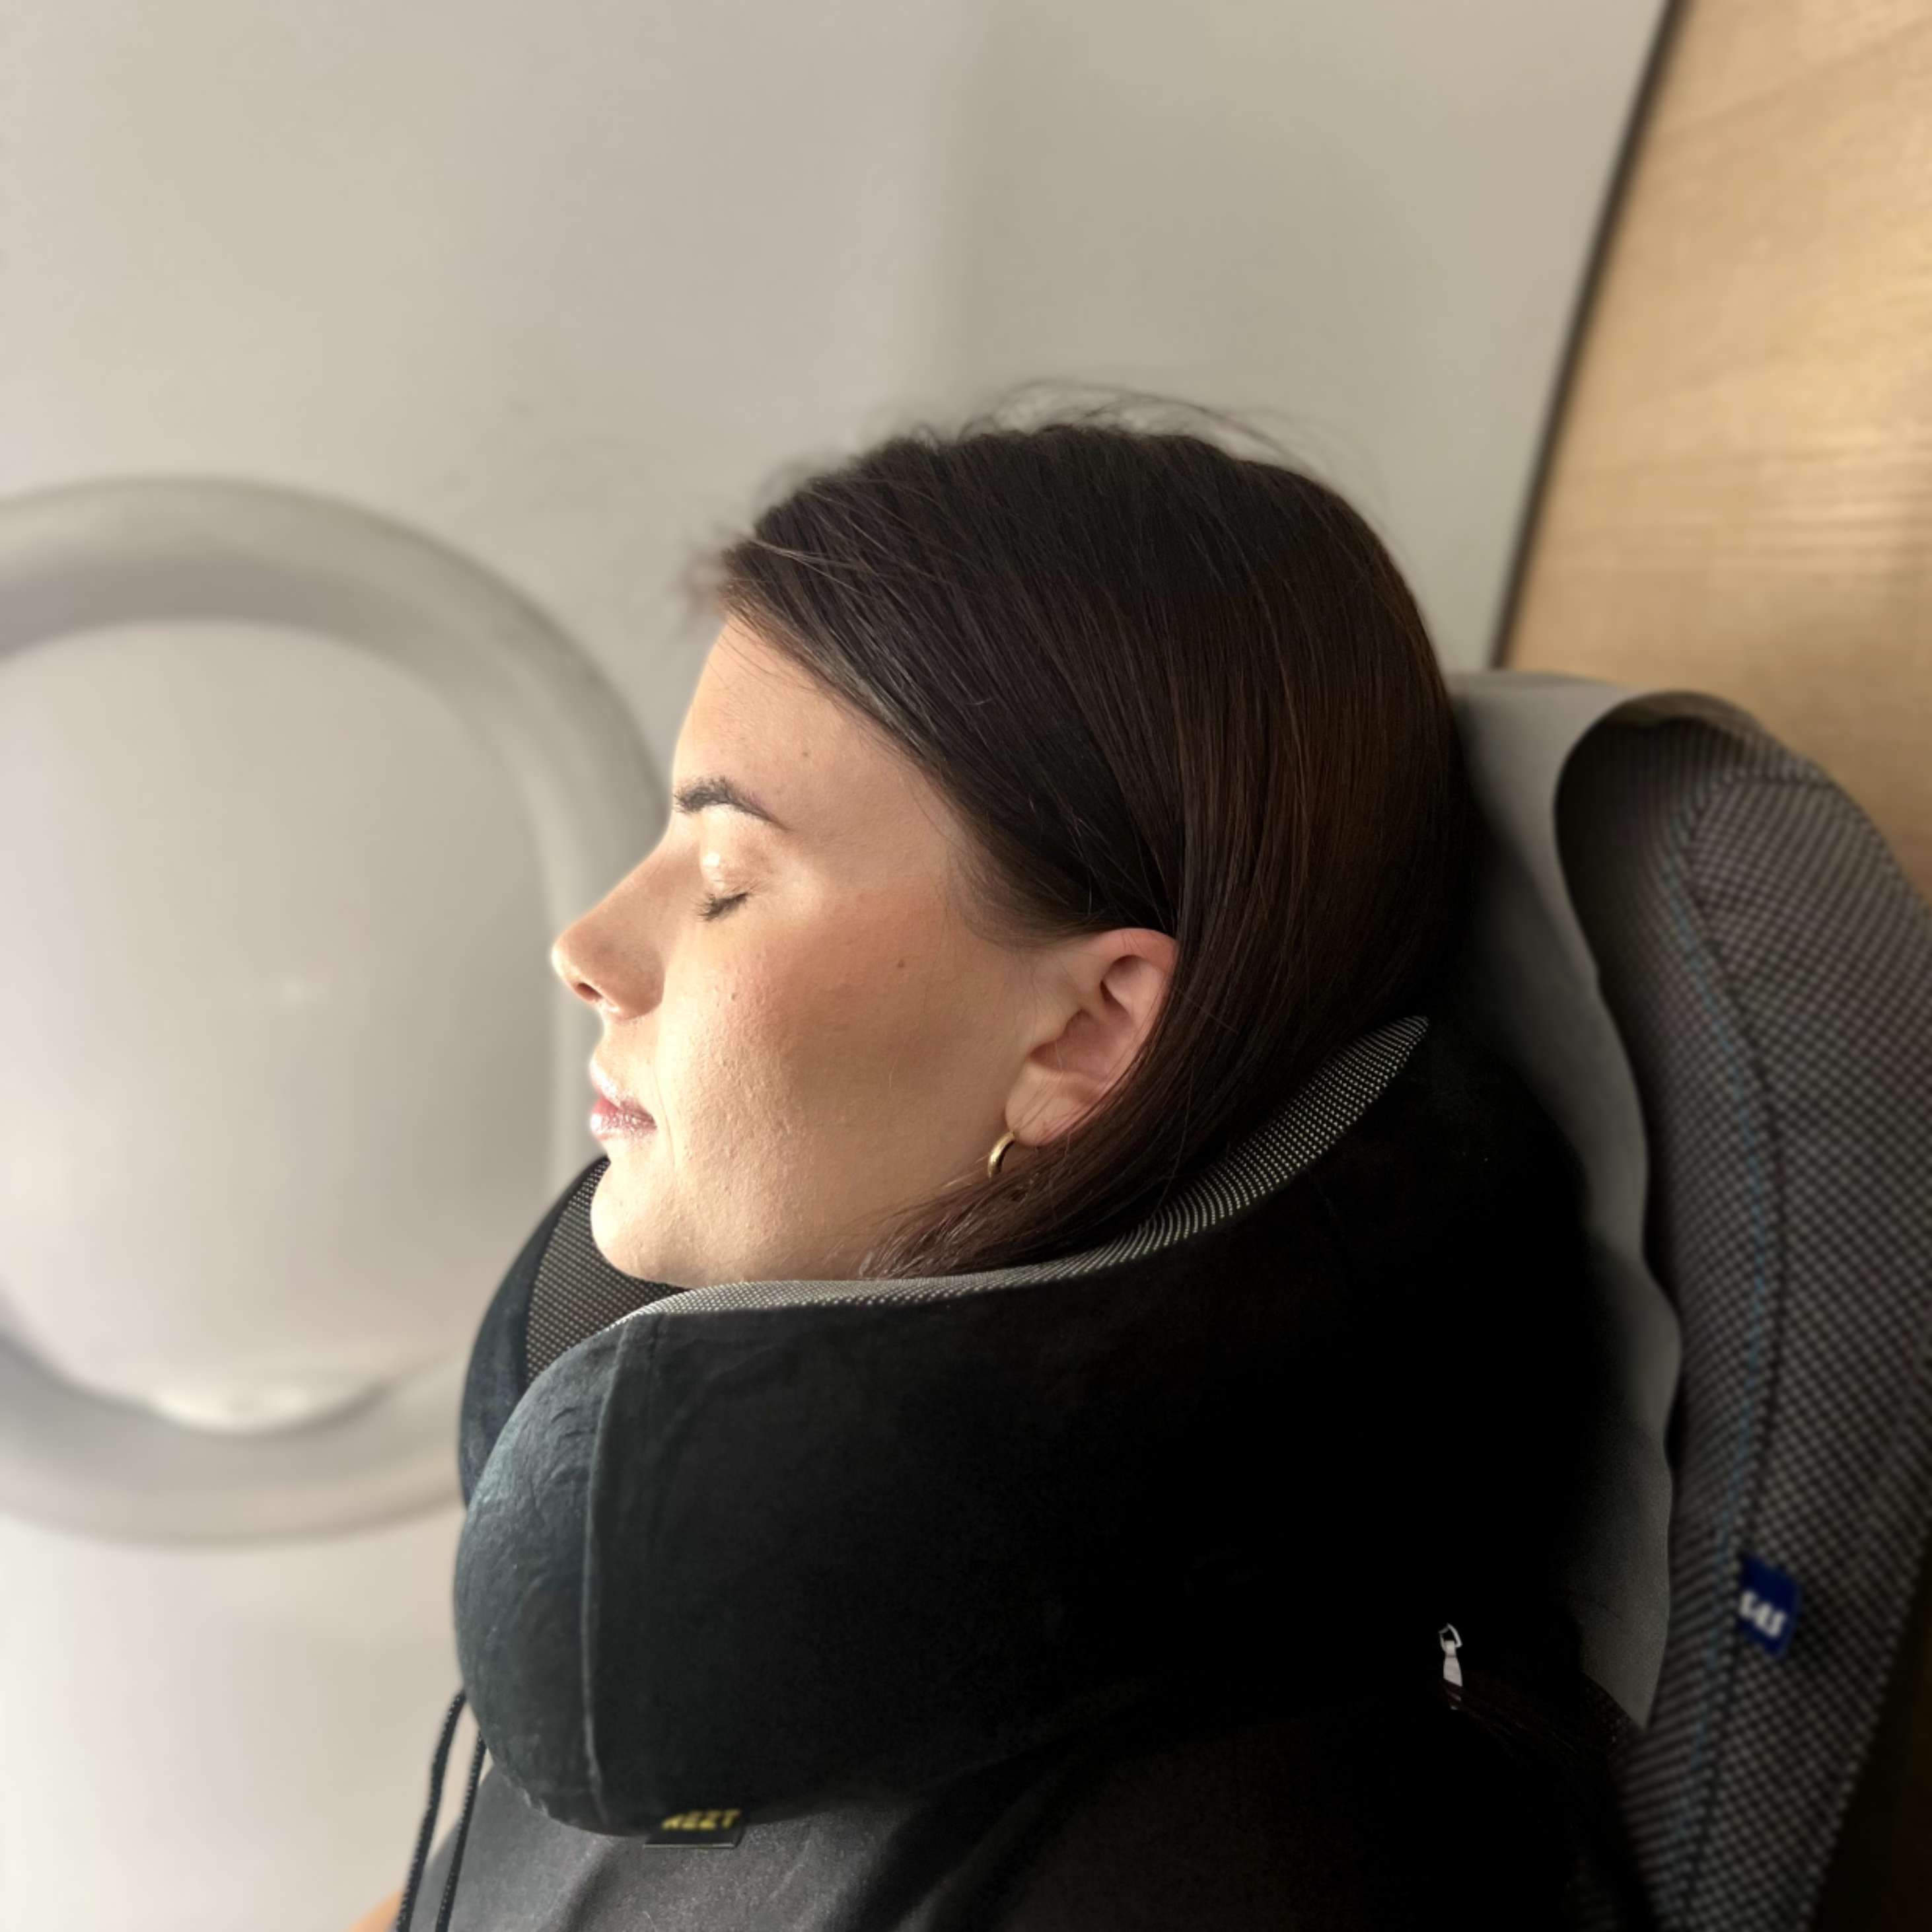 En kvinne slapper av i et flysete med en støttende REZT reisepute